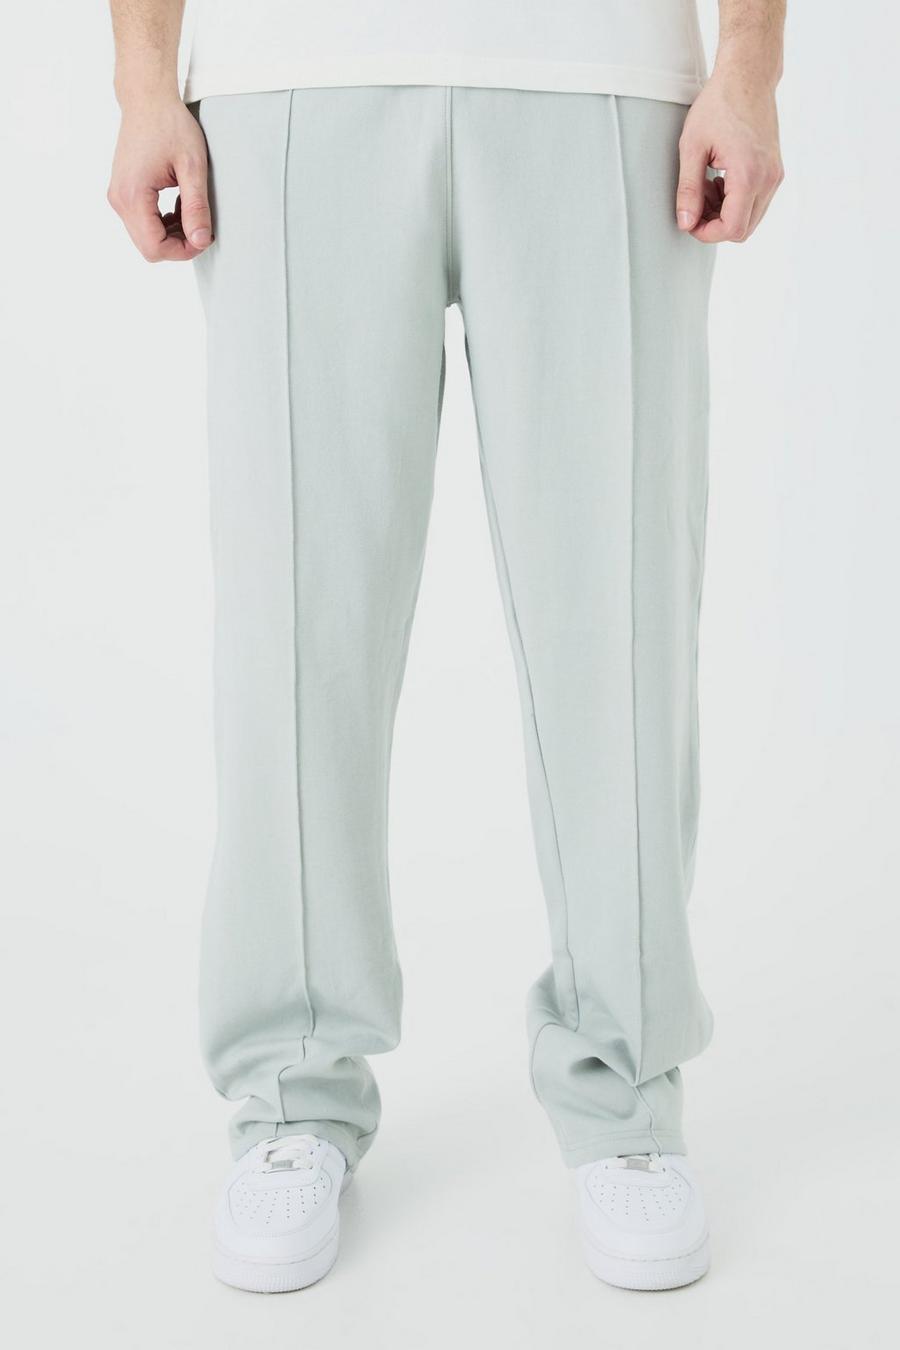 Pantalón deportivo Tall holgado con alforza, Light grey